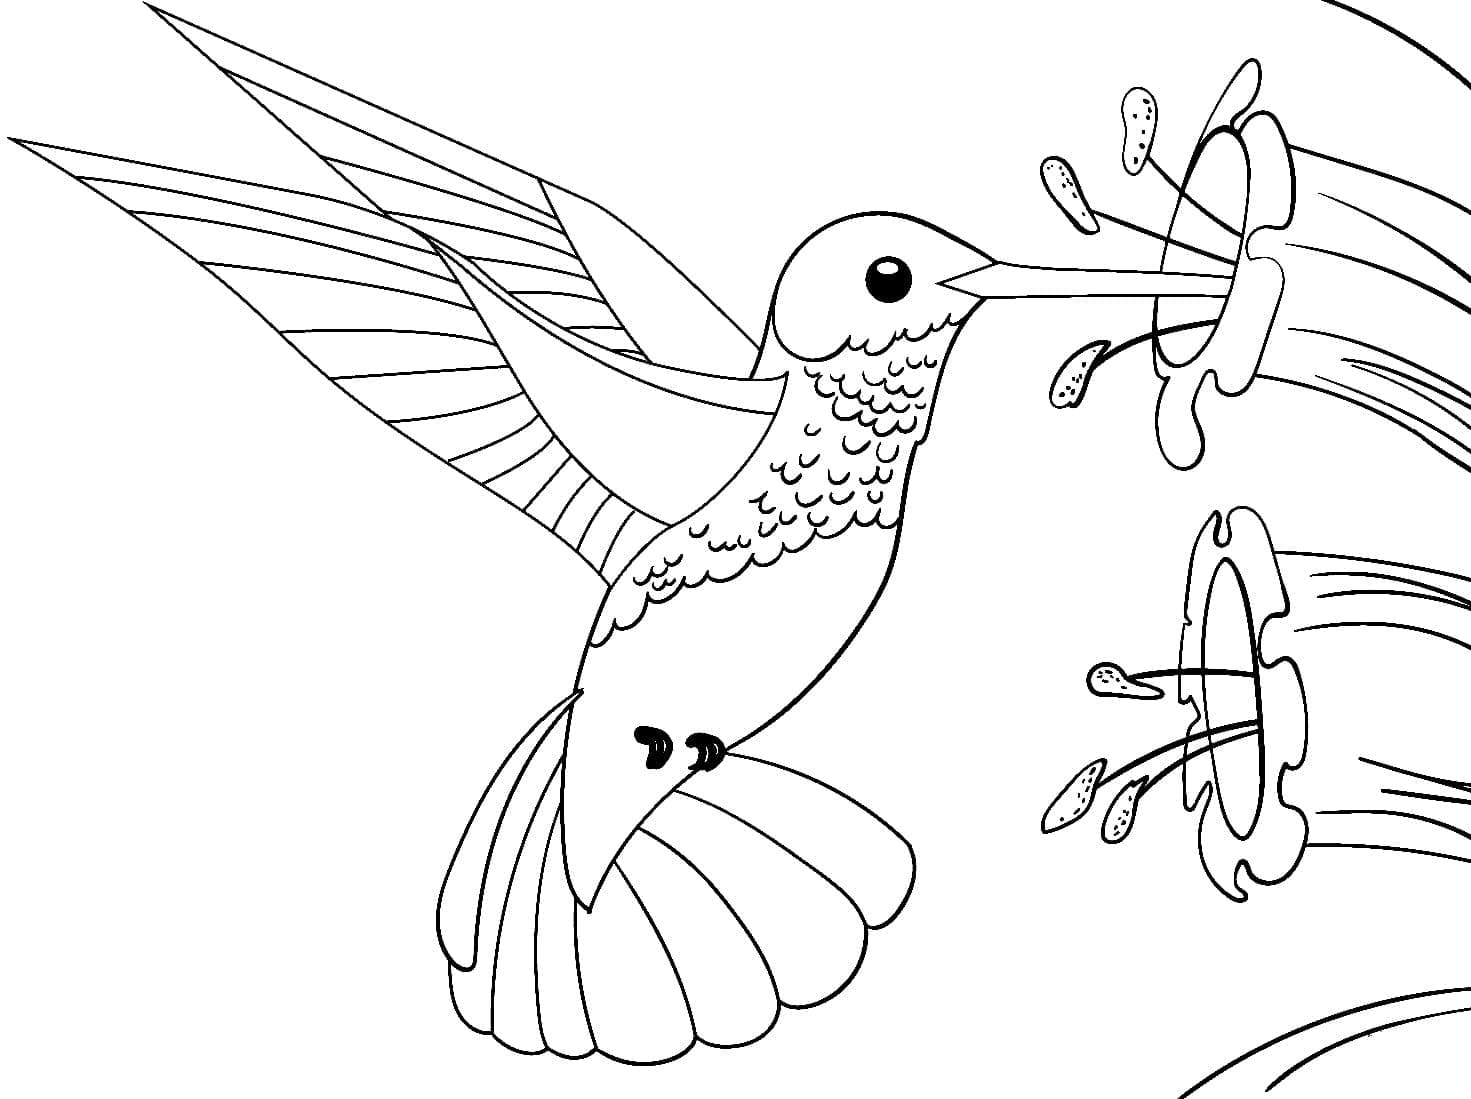 Joli Colibri coloring page